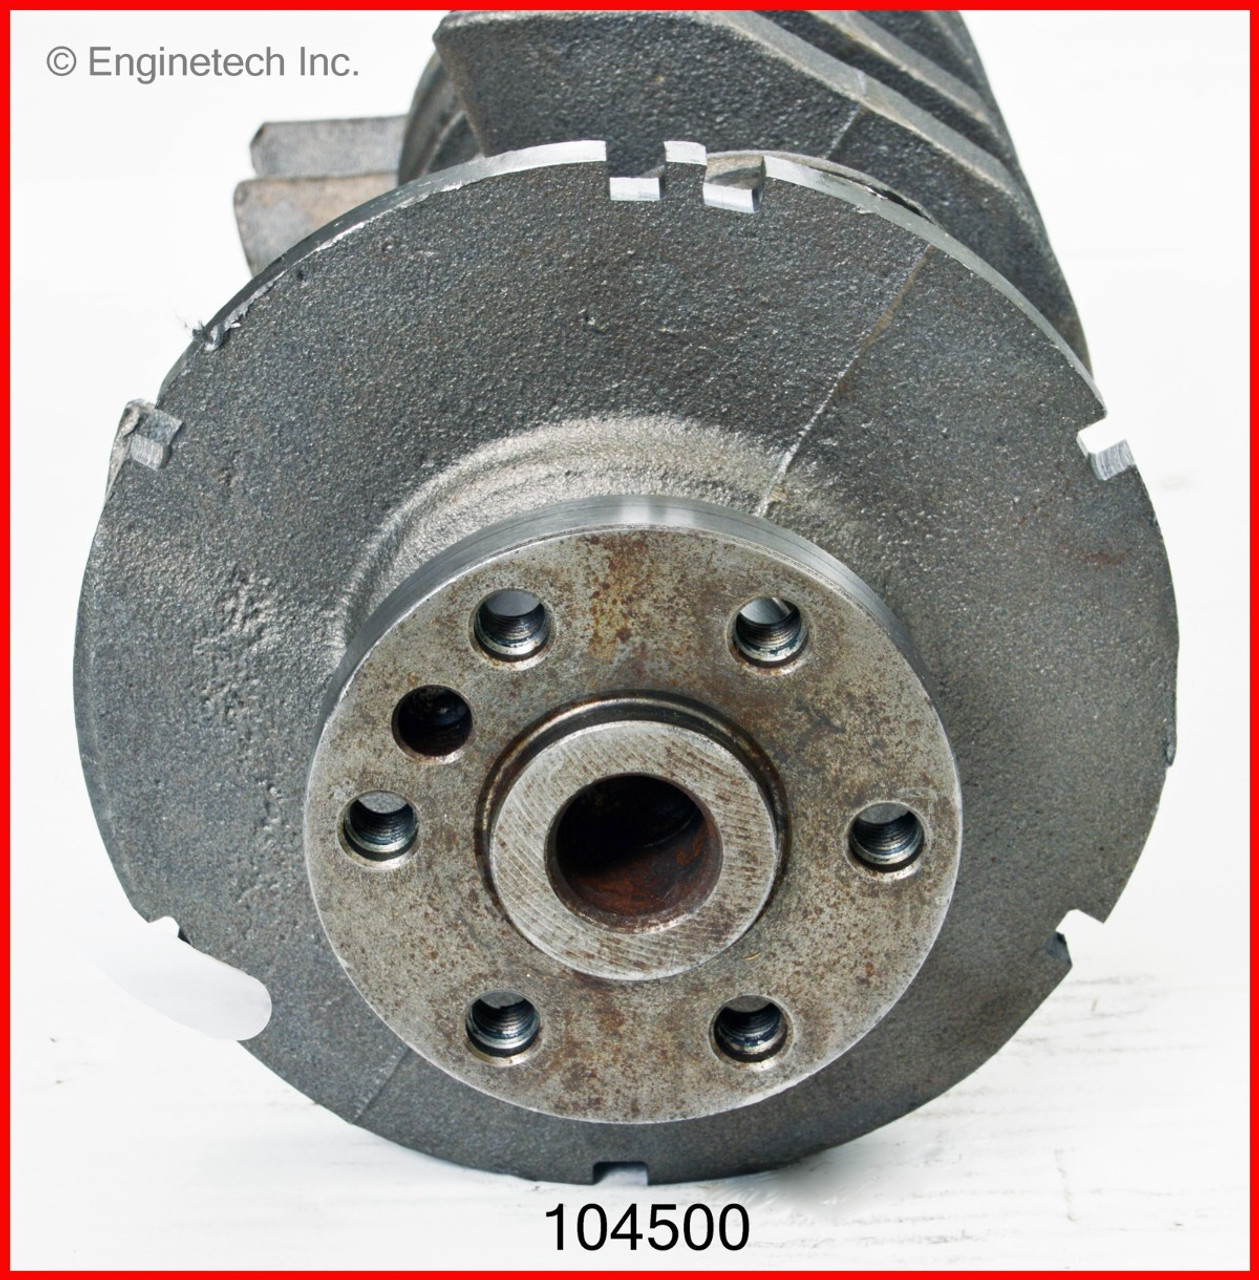 Crankshaft Kit - 2003 Saturn Ion 2.2L (104500.B19)